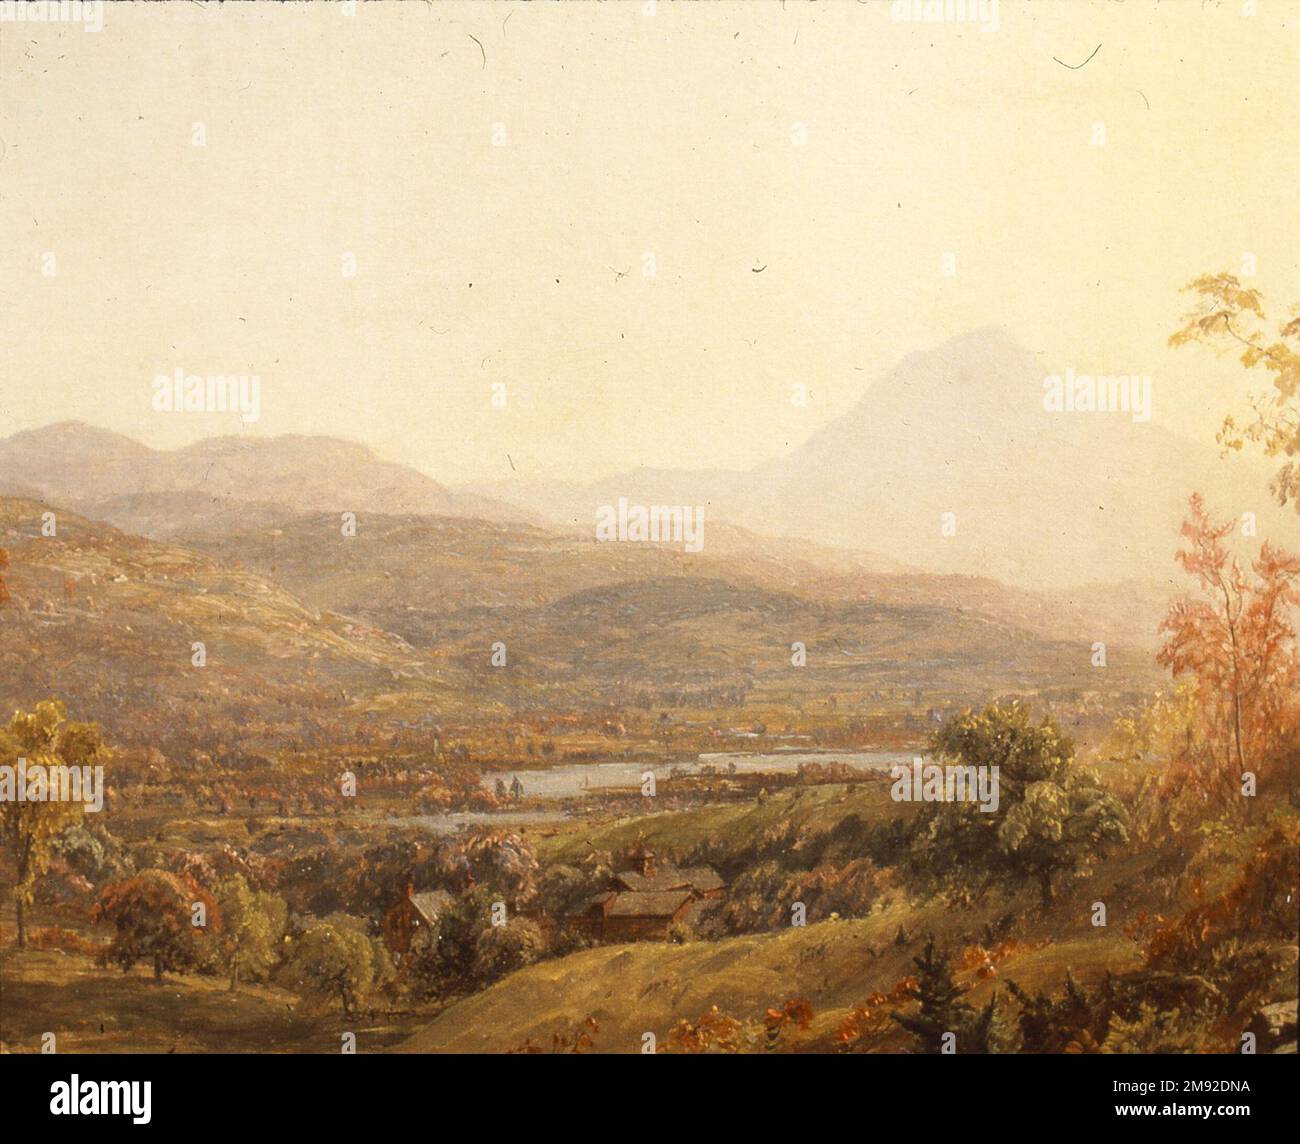 Automne au mont Chocorua Jasper Francis Cropsey (américain, 1823-1900). Automne au Mont Chocorua, 1869. Huile sur toile, 23 13/16 x 44 1/4 in. (60,5 x 112,4 cm). Cette scène automnale brillamment rendue offre une vue panoramique sur les montagnes blanches du New Hampshire, où Jasper Francis Cropsey a esquissé et peint en 1860s et début 1870s, avec le sommet du mont Chocorua au loin. Au premier plan, les éléments topographiques observés de près, y compris les arbres sabrés et le feuillage d'automne, sont rendus avec des détails infimes, tandis que le ciel étendu est illuminé par une lueur jaune percutant. Le Banque D'Images